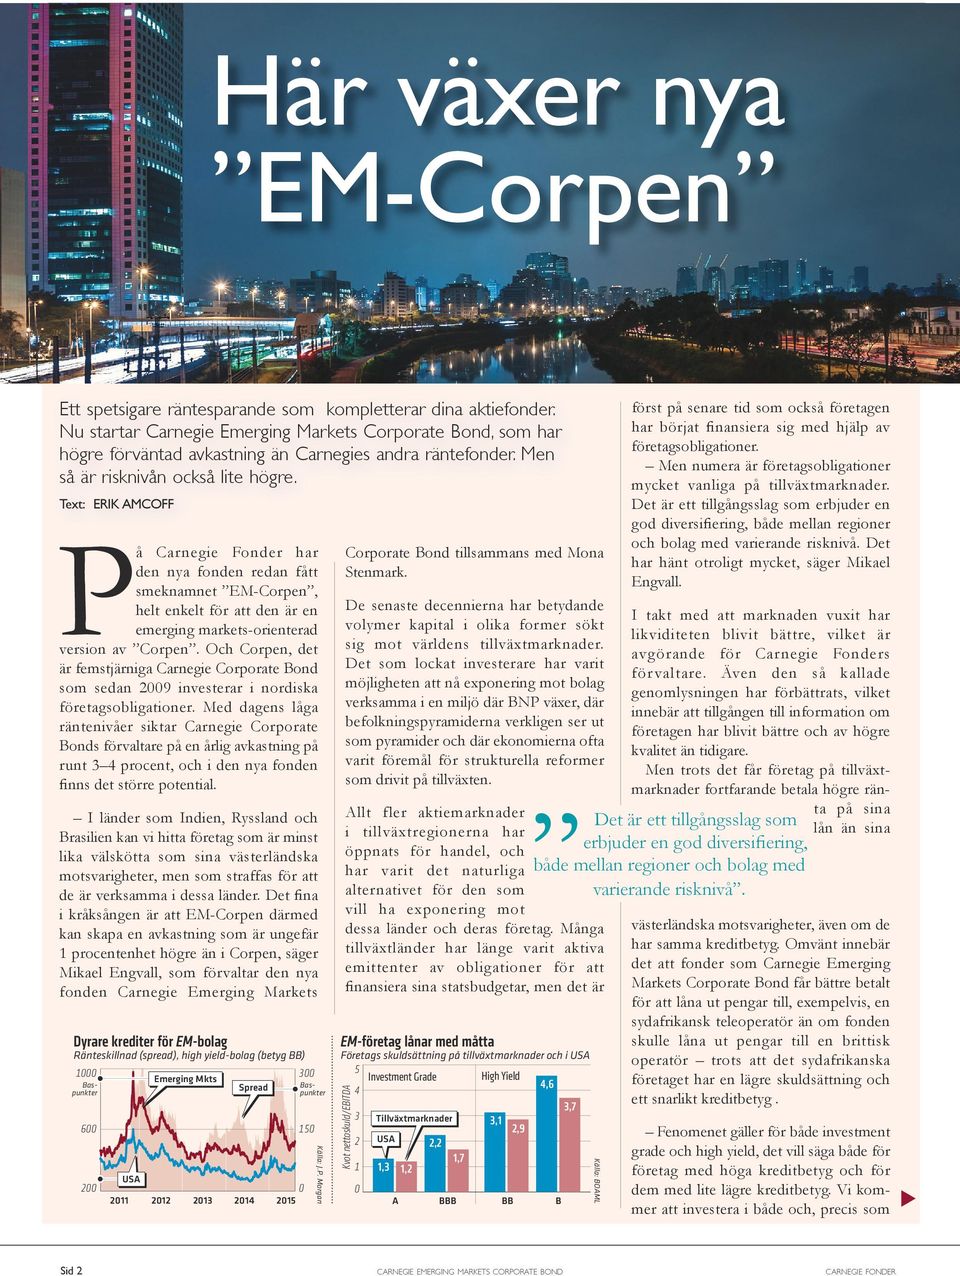 Text: ERIK AMCOFF På Carnegie Fonder har den nya fonden redan fått smeknamnet EM-Corpen, helt enkelt för att den är en emerging markets-orienterad version av Corpen.